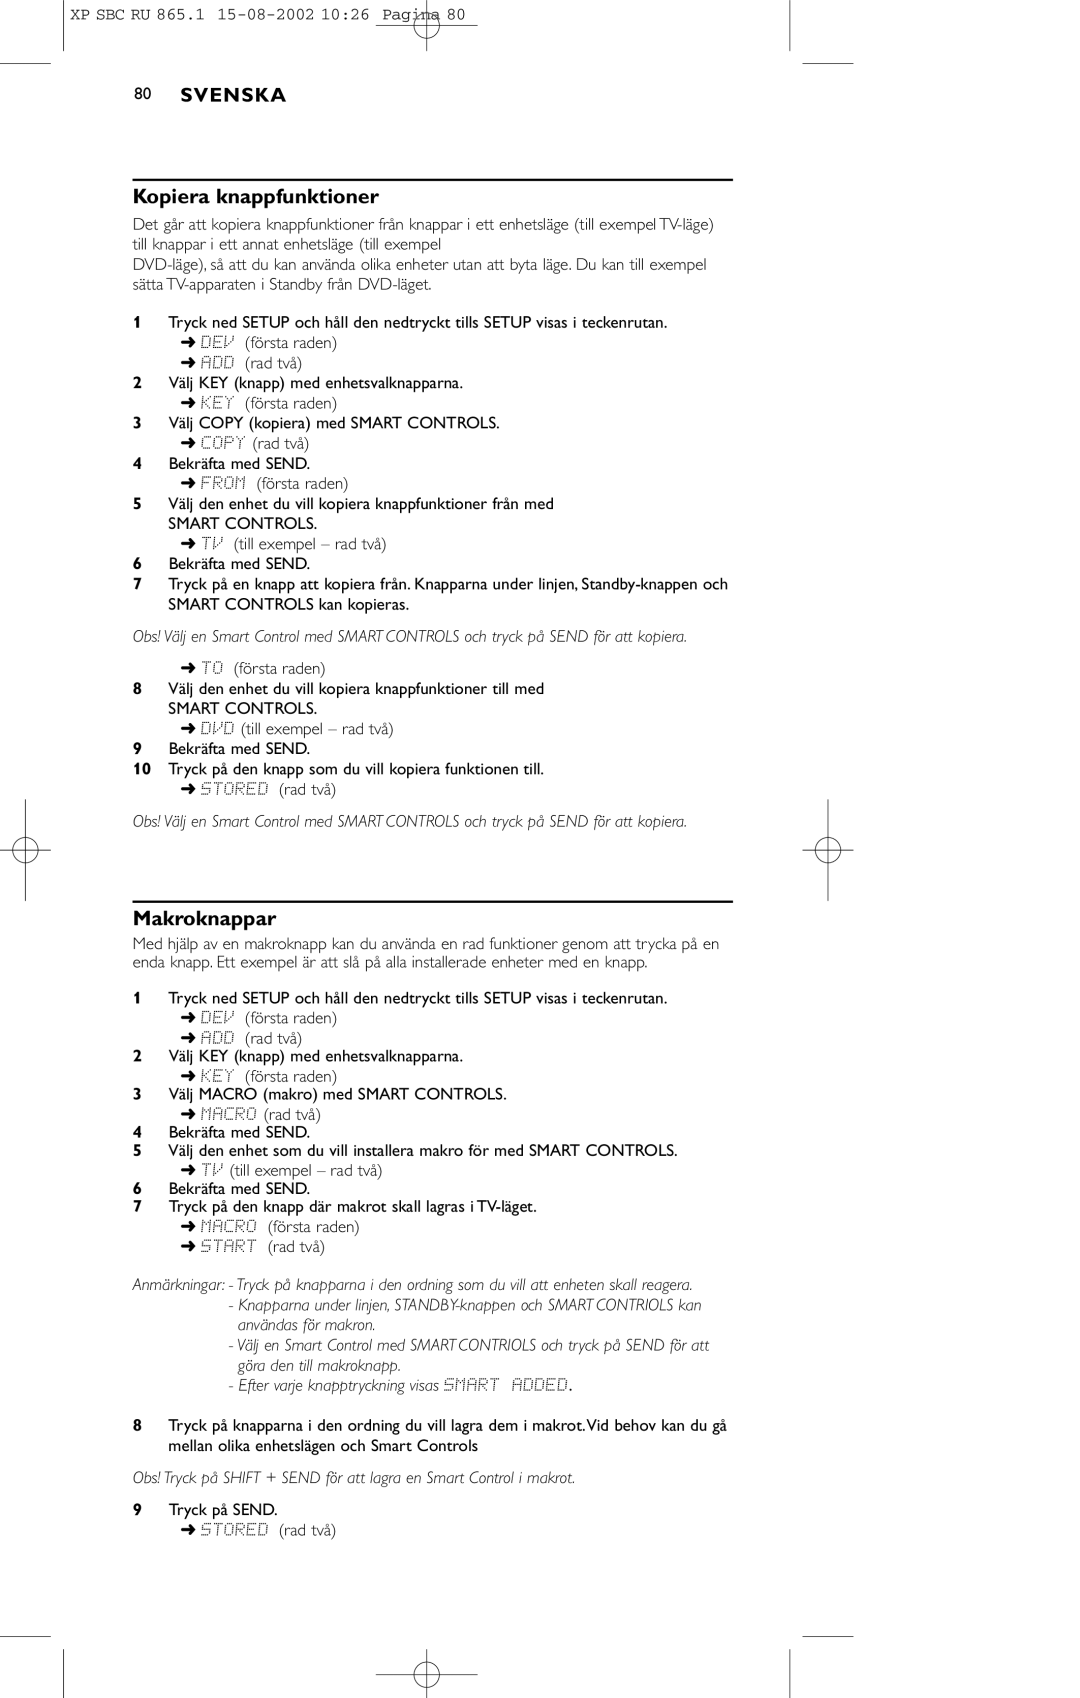 Philips SBC RU 865/00 manual Kopiera knappfunktioner, Makroknappar 